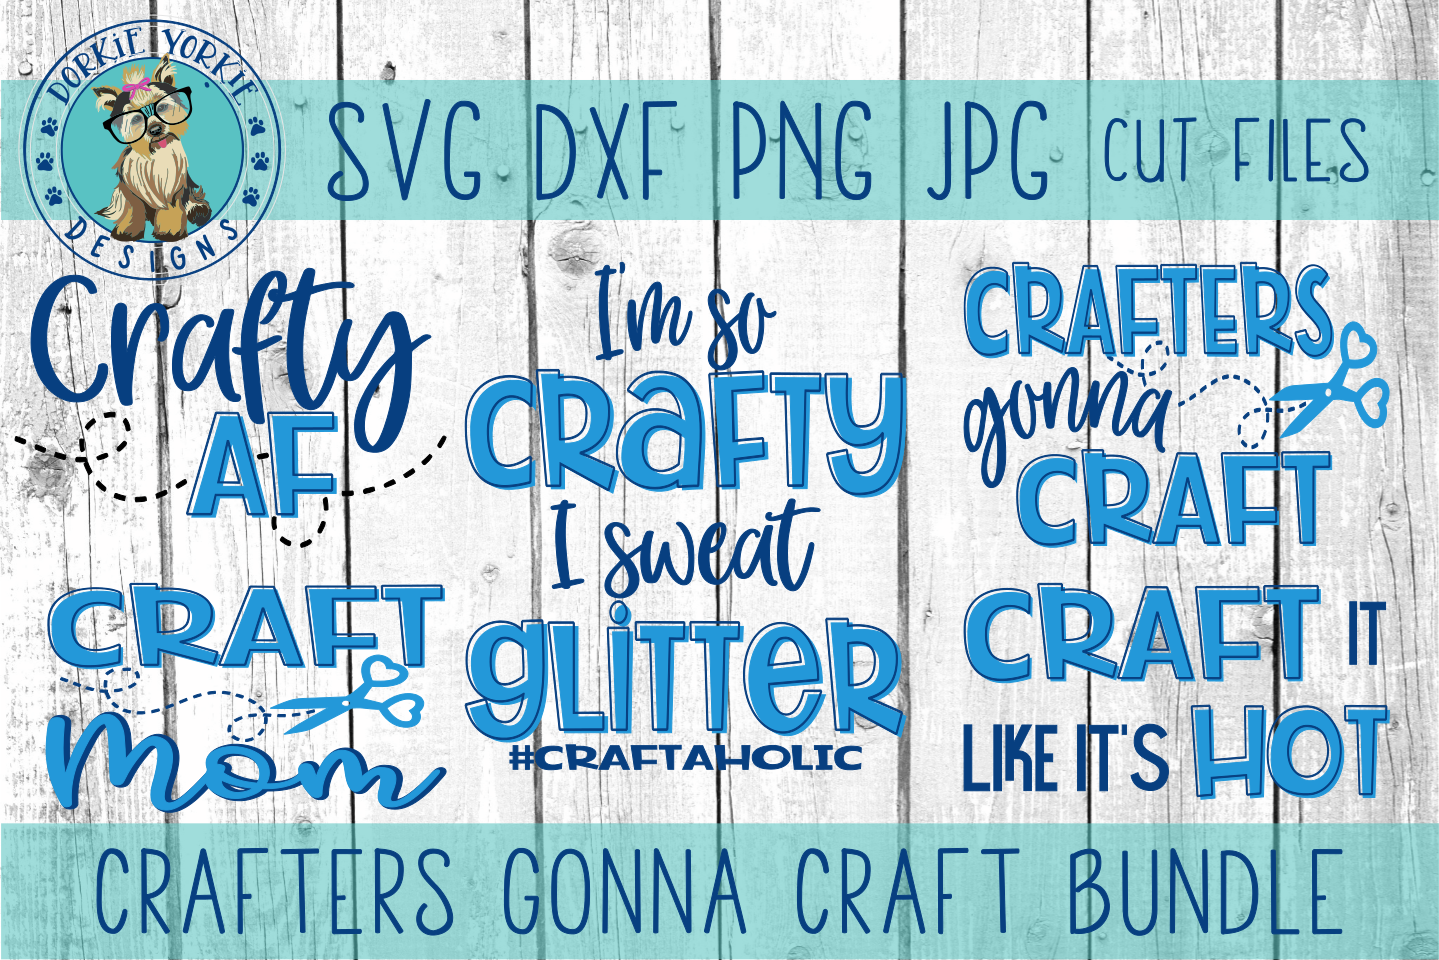 Crafters Gonna Craft BUNDLE - mom, af, crafty,SVG cut file